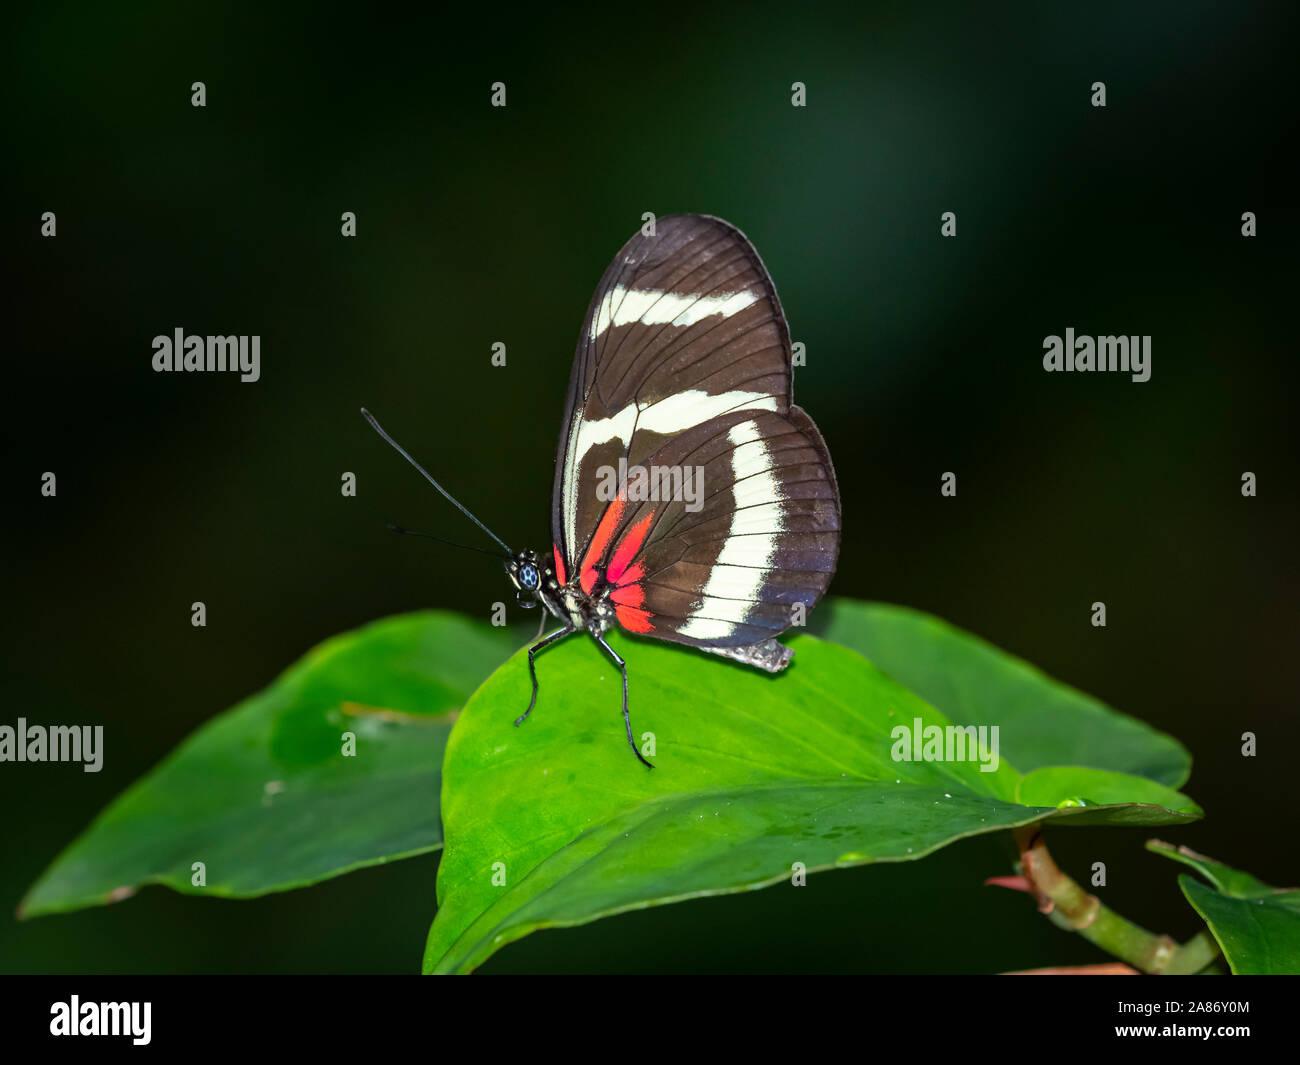 Cerca del blanco y negro y red butterfly Foto de stock